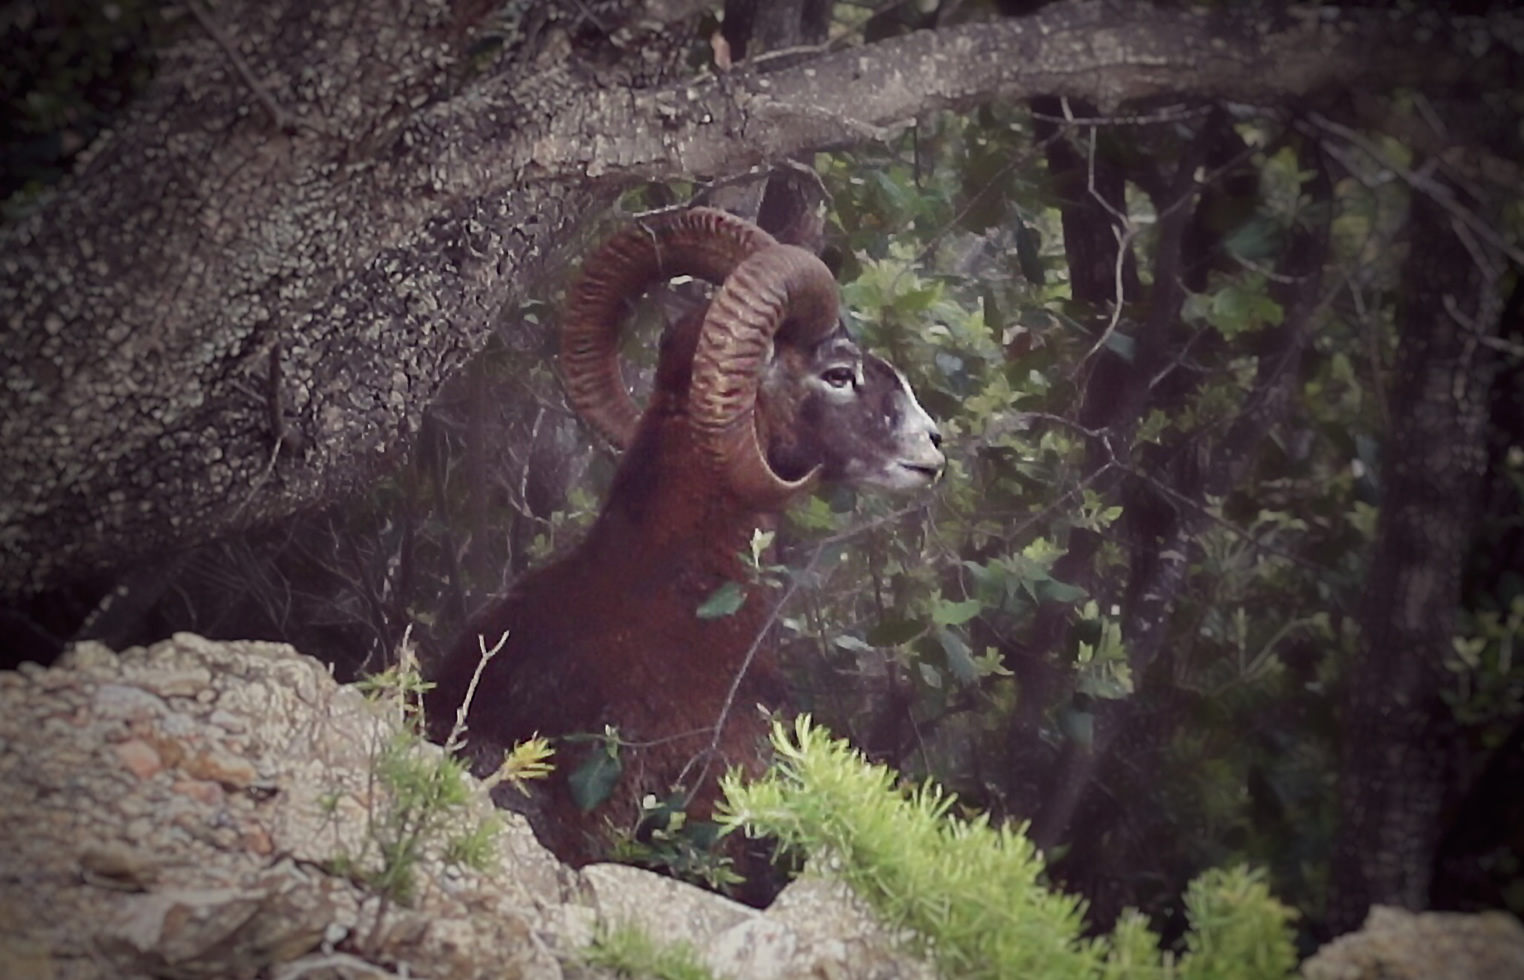 Mouflon of Giglio Island